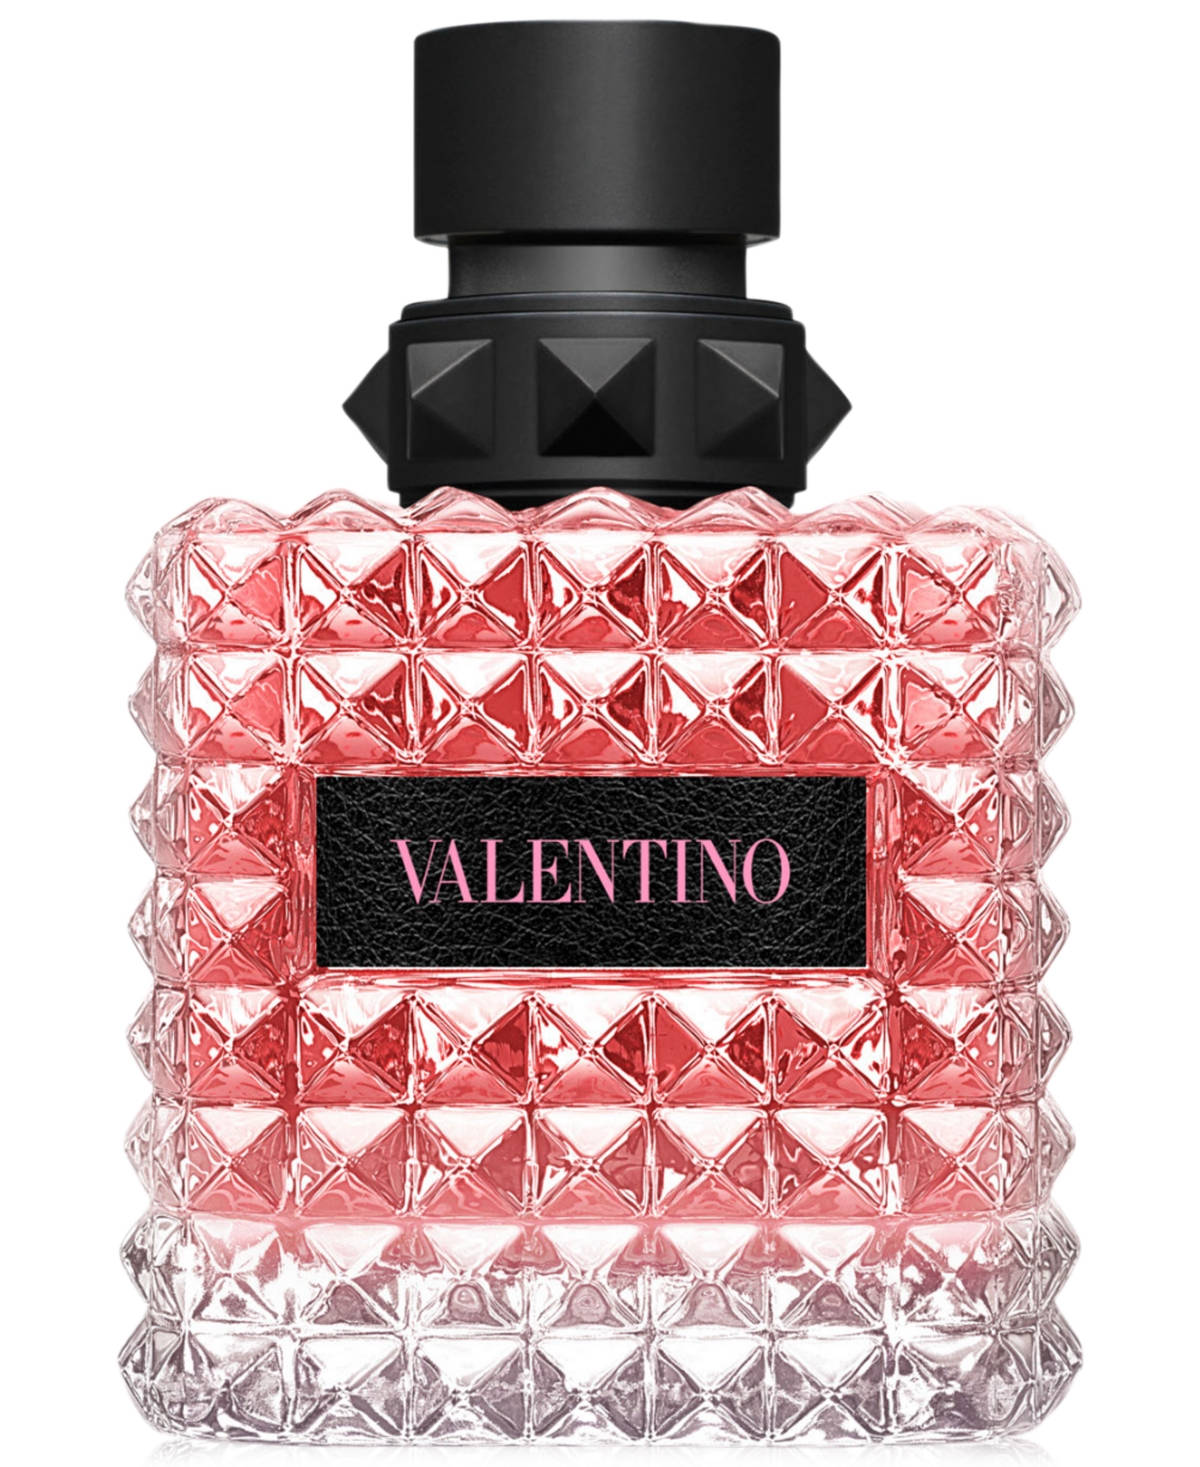 Valentino Perfume Bottle Background